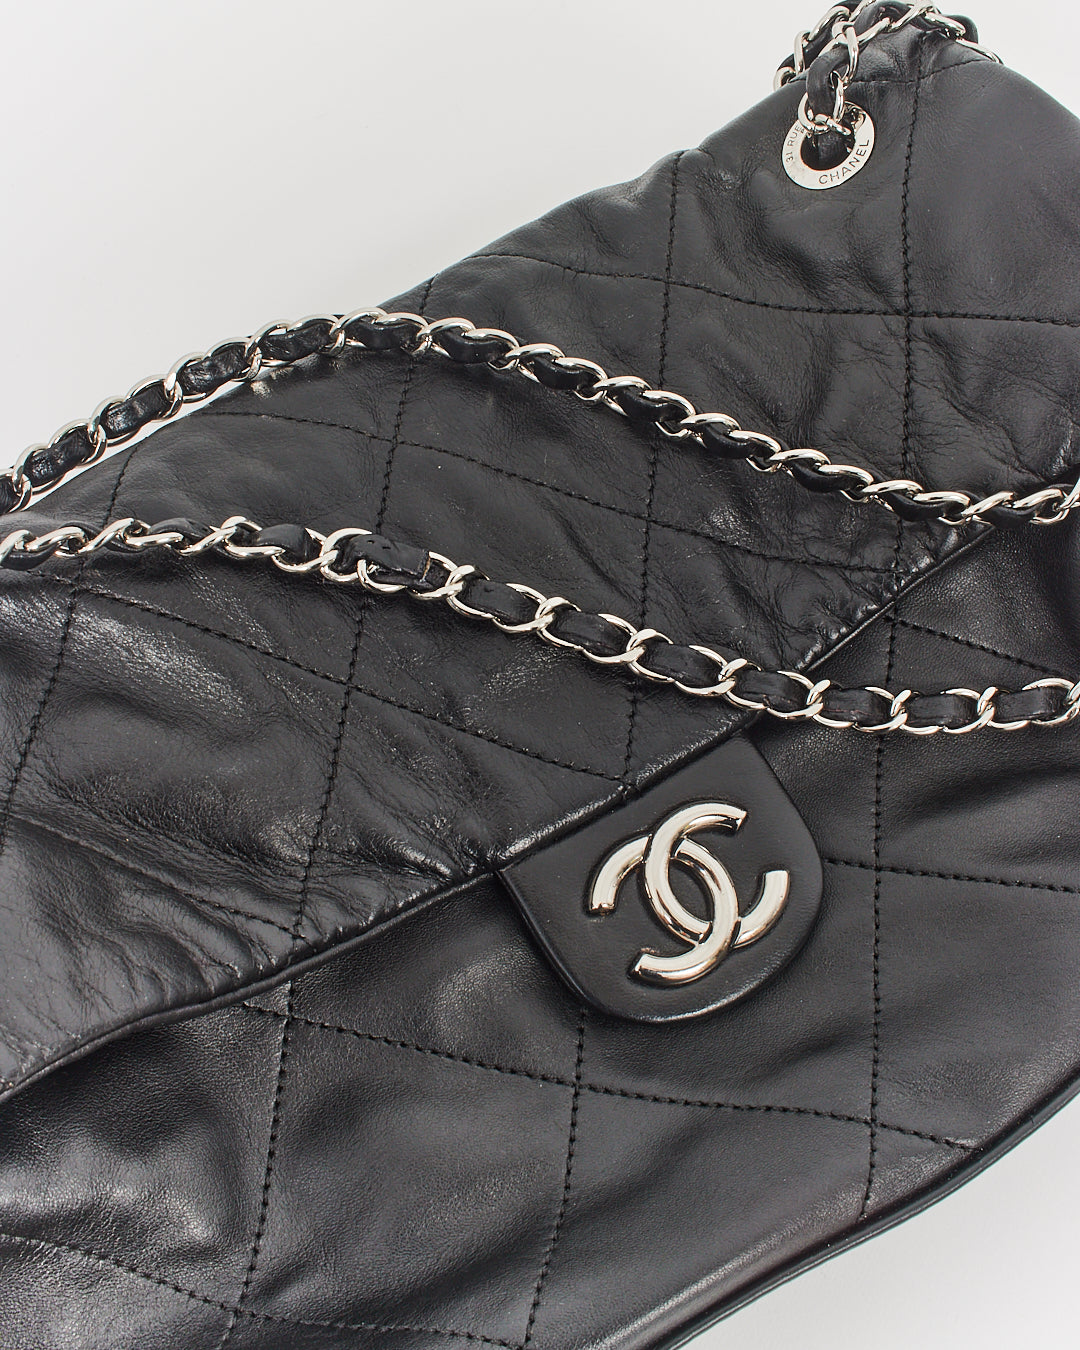 Chanel Black Lambskin Ultimate Stitch Structured Shoulder Bag